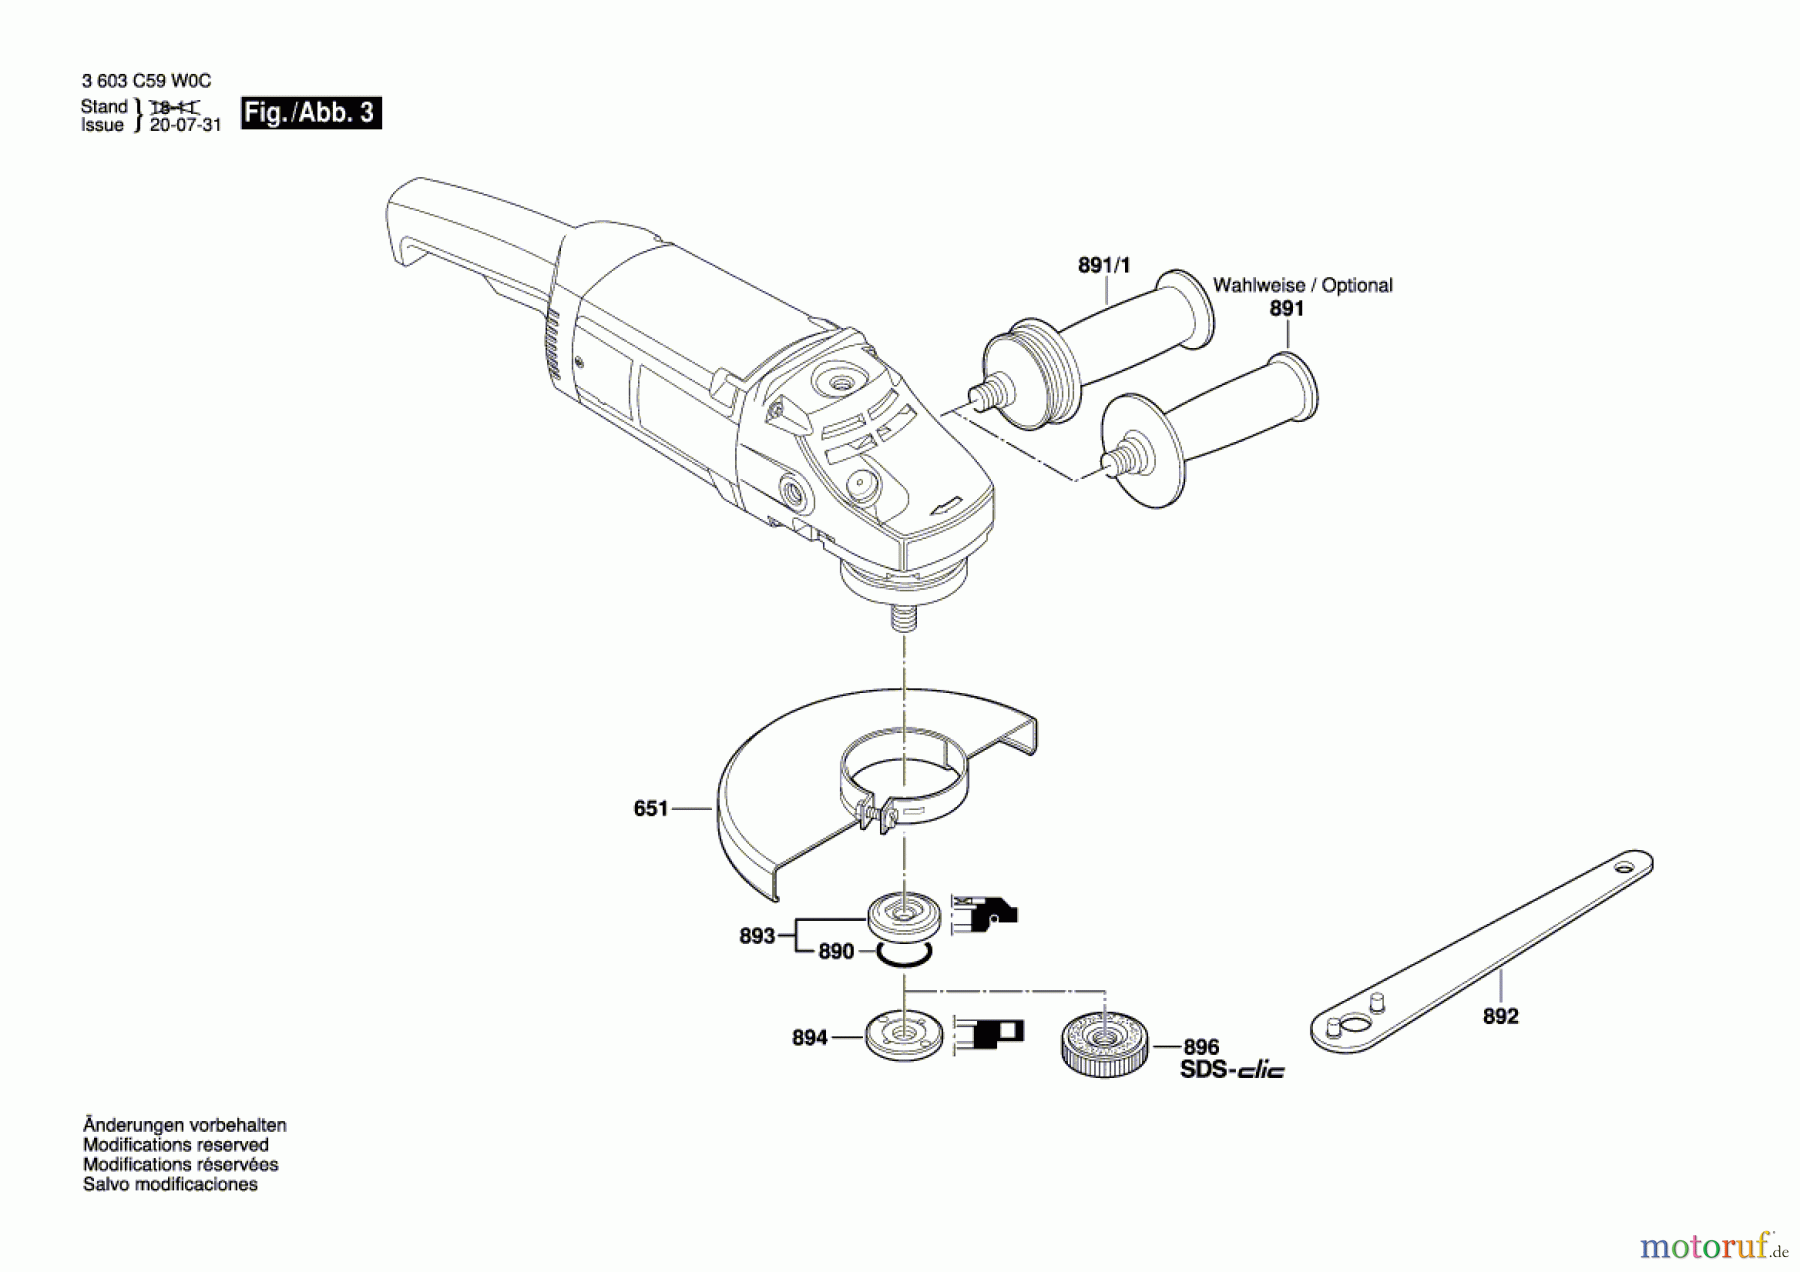  Bosch Werkzeug Winkelschleifer PWS 20-230 Seite 3